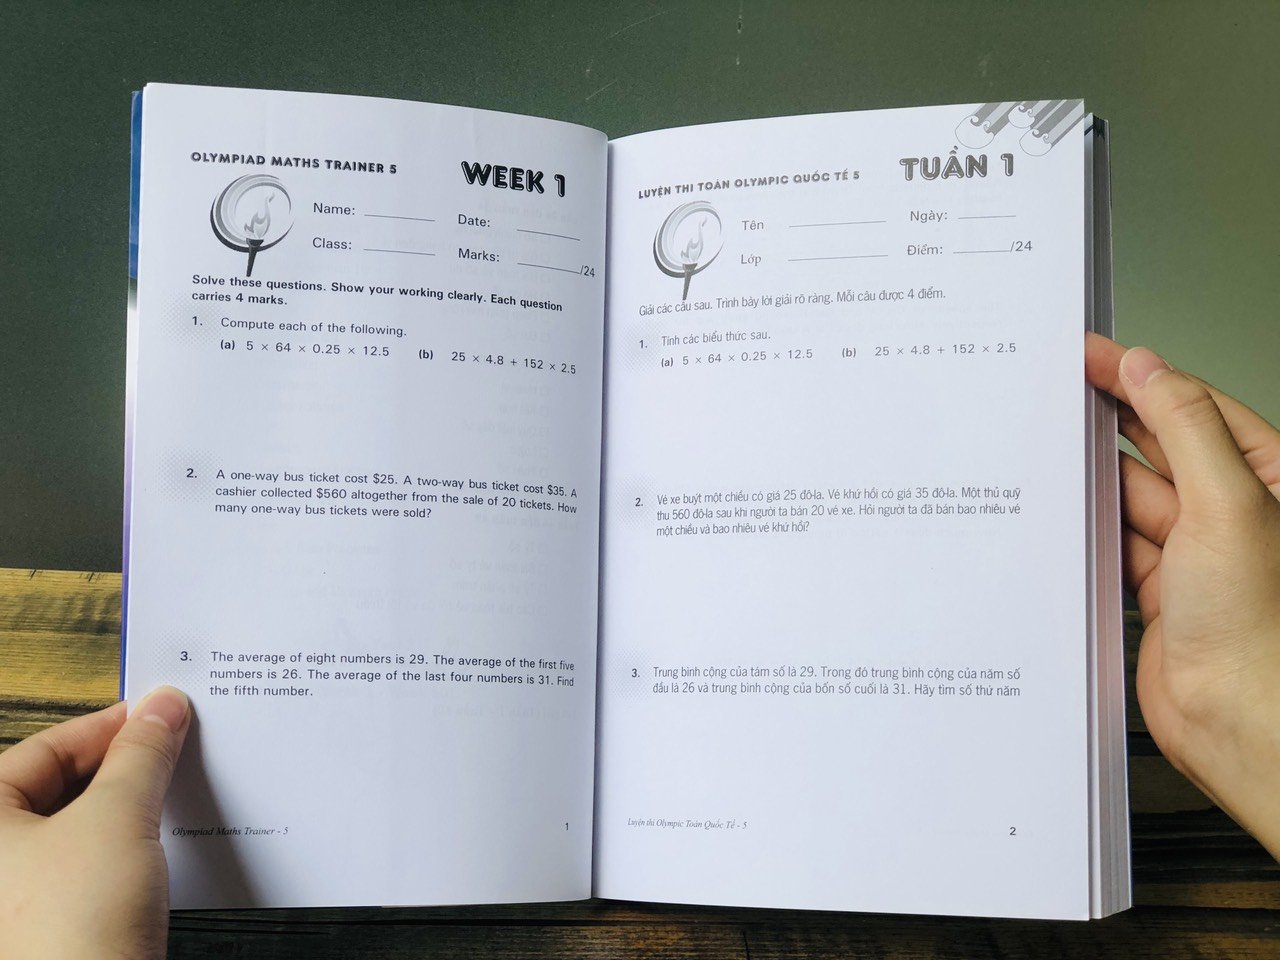 Sách: Combo 6 cuốn Luyện thi Olympic Toán quốc tế - Tổng hơp đề thi Toán cho trẻ từ 7-15 tuổi